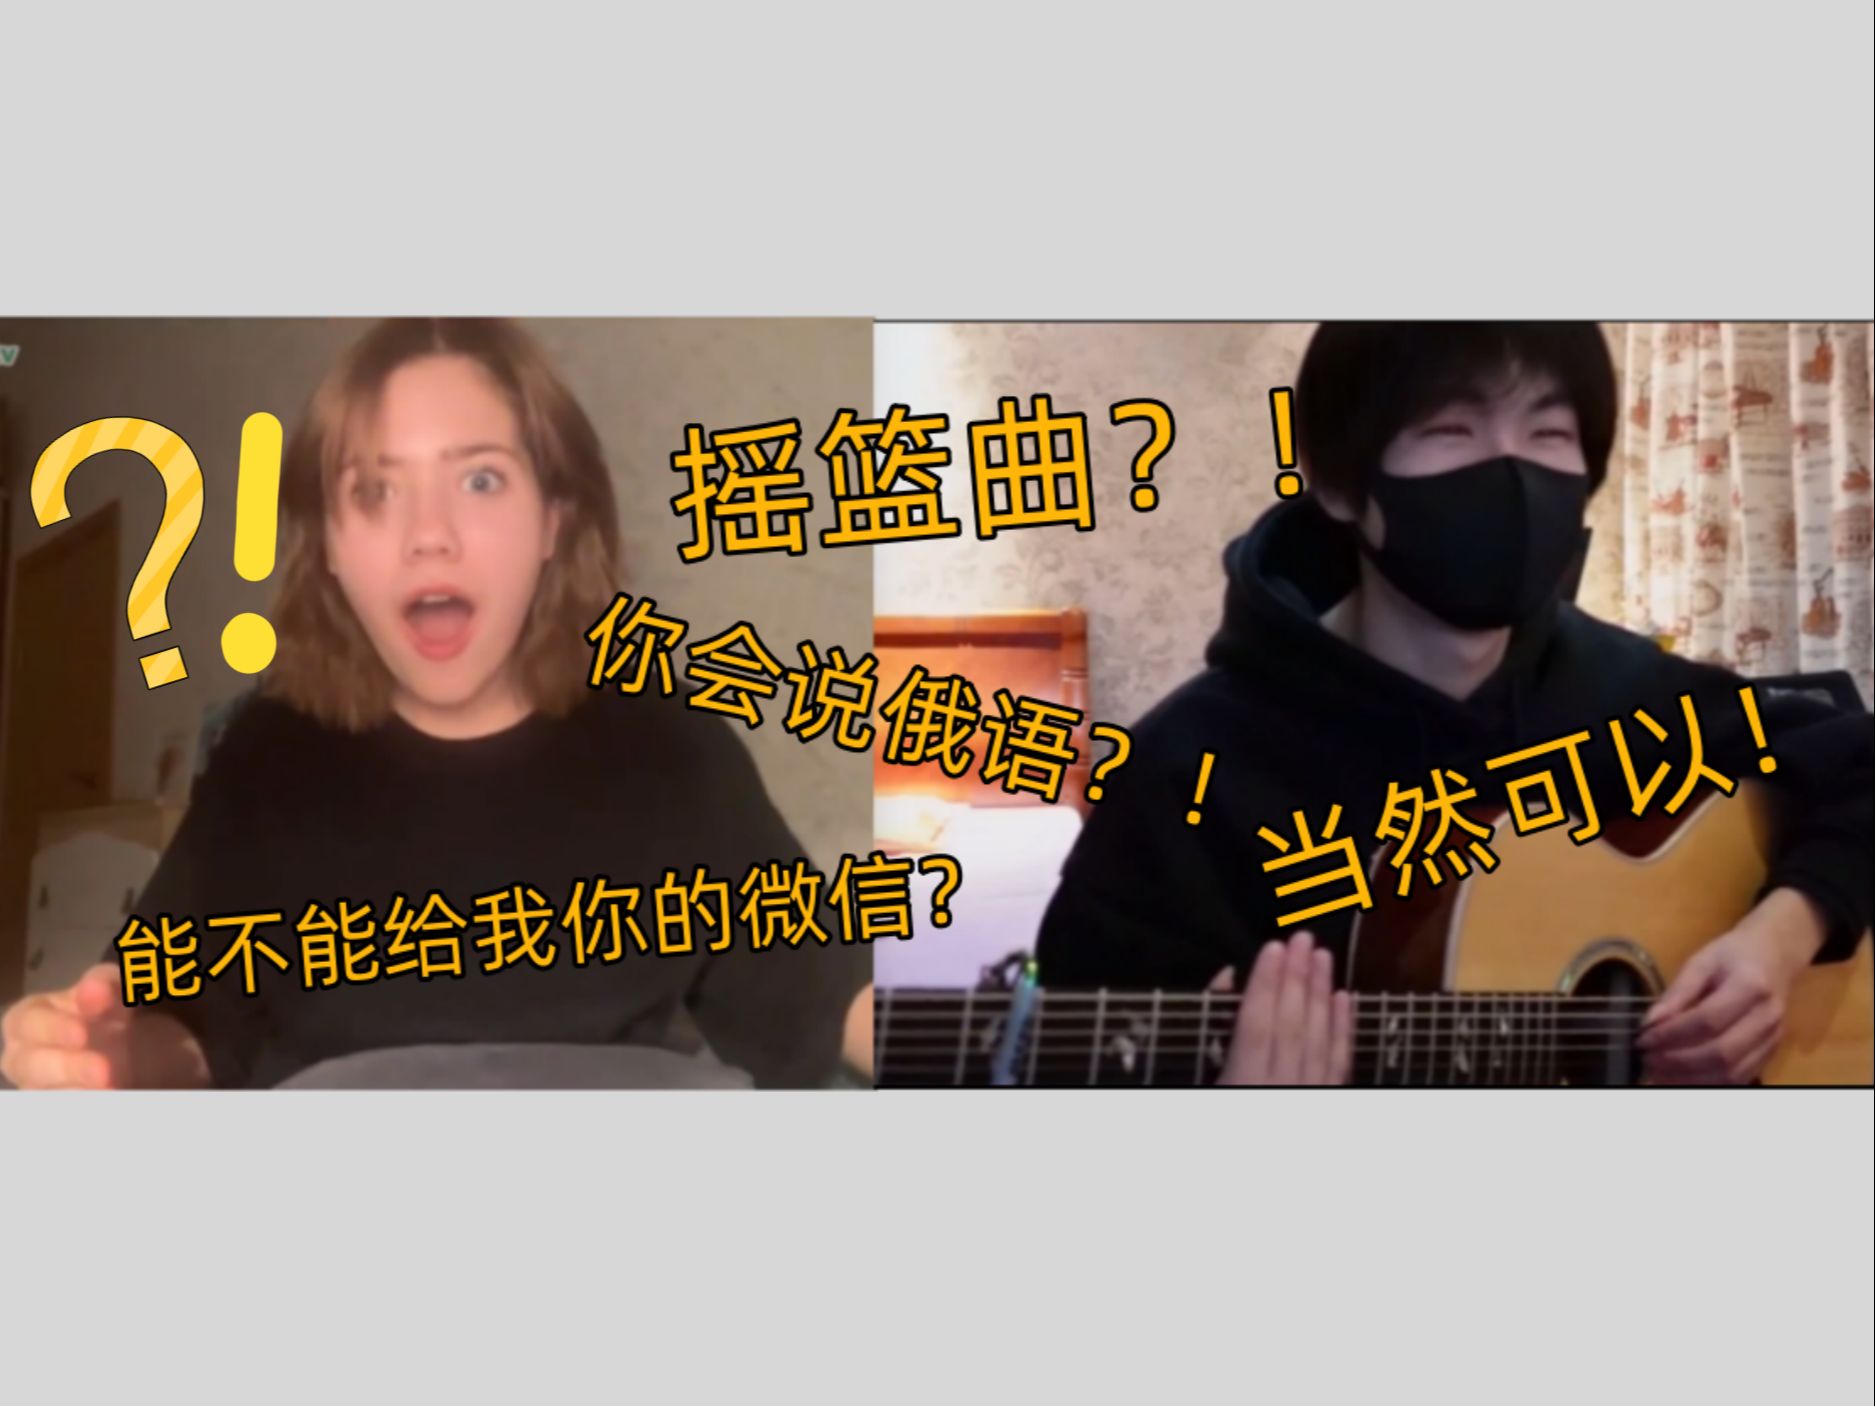 中国小伙用一首歌让俄罗斯女孩全程震惊？竟被主动要联系方式了？(国际尬聊)